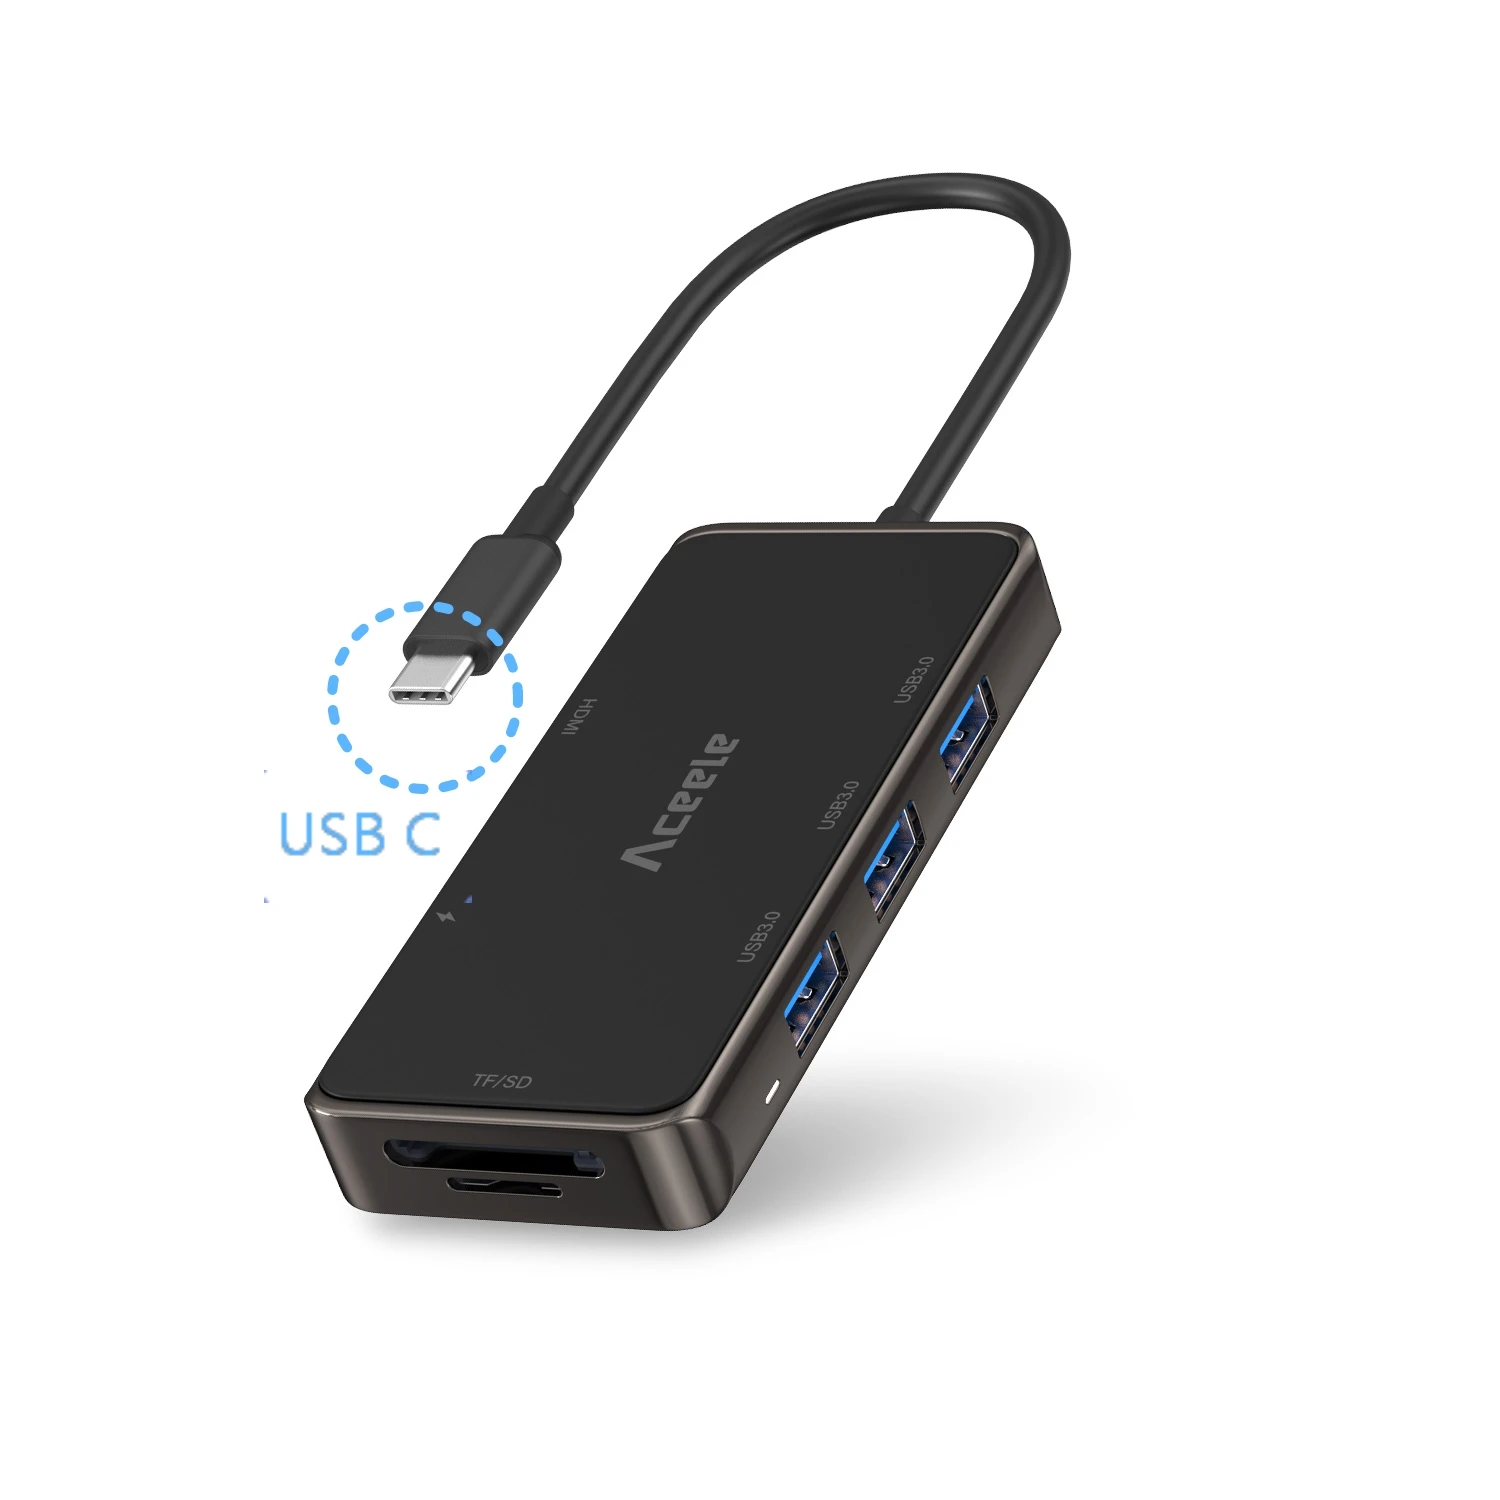 Aceele 7 в 1 нескользящий USB C концентратор 3 USB 3,0 HDMI питание SD/TF карт ридер порты для Macbook Pro samsung Tab S4 Dell XPS